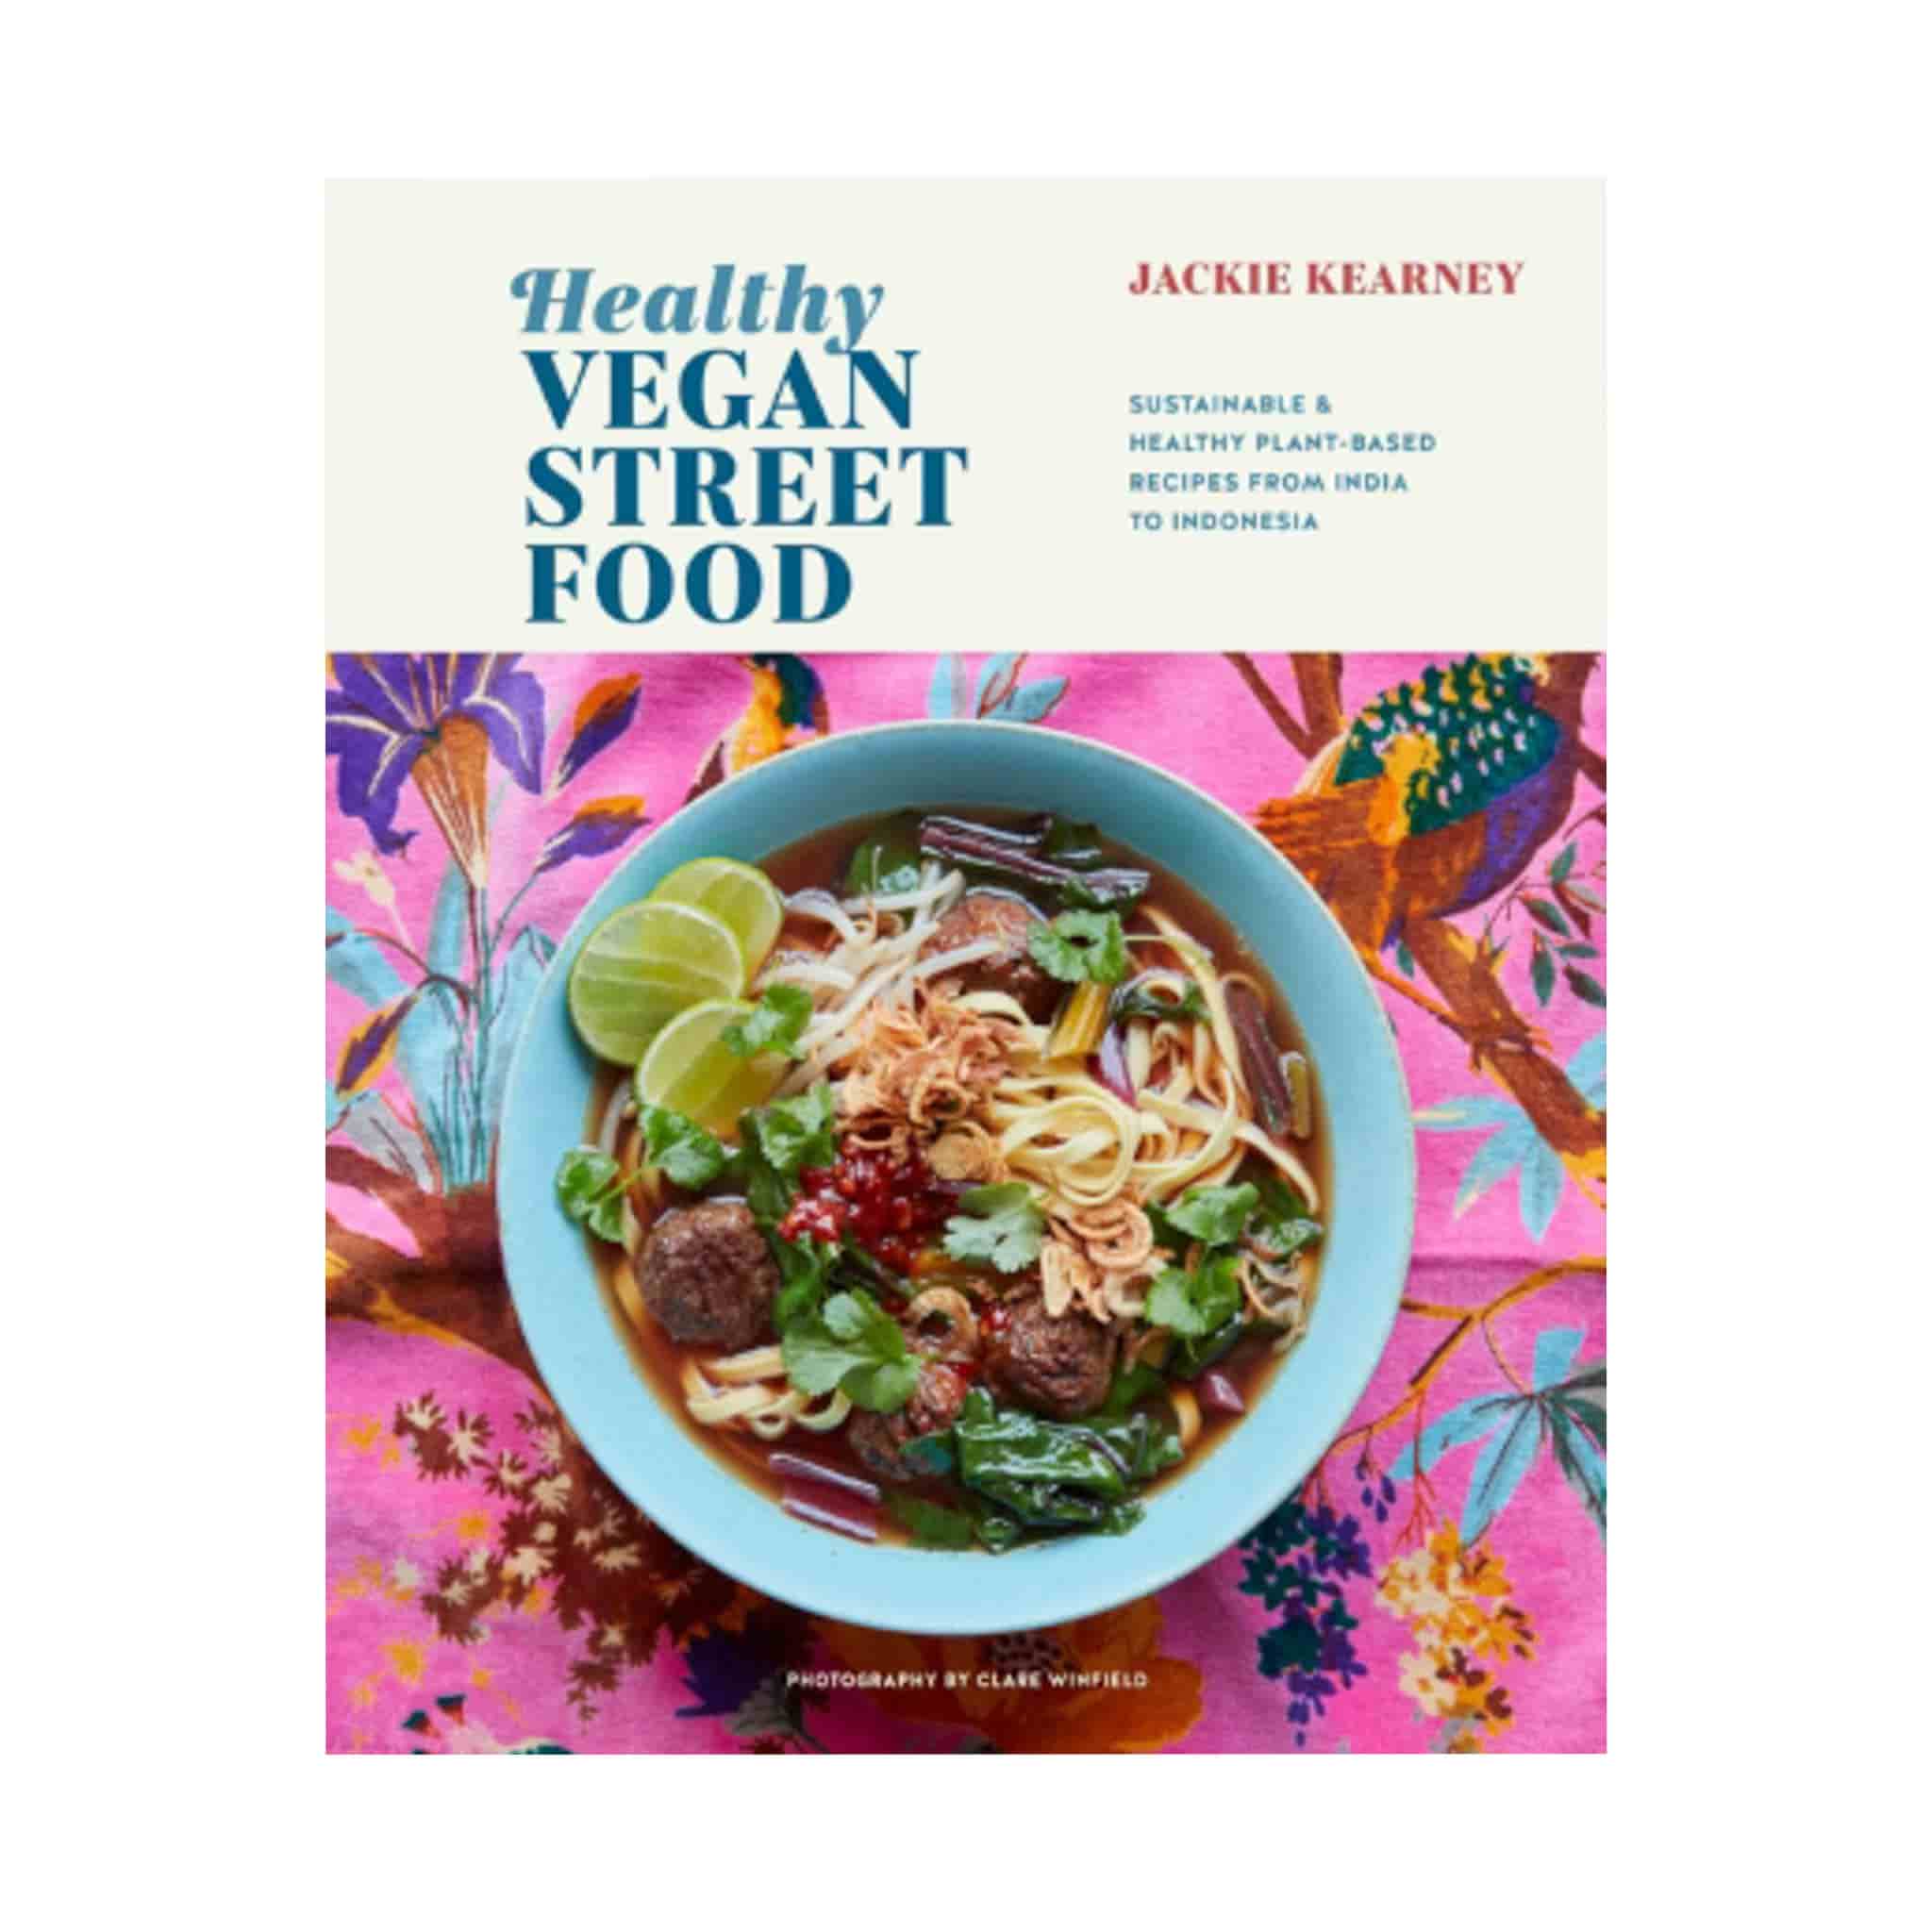 Healthy Vegan Street Food by Jackie Kearney